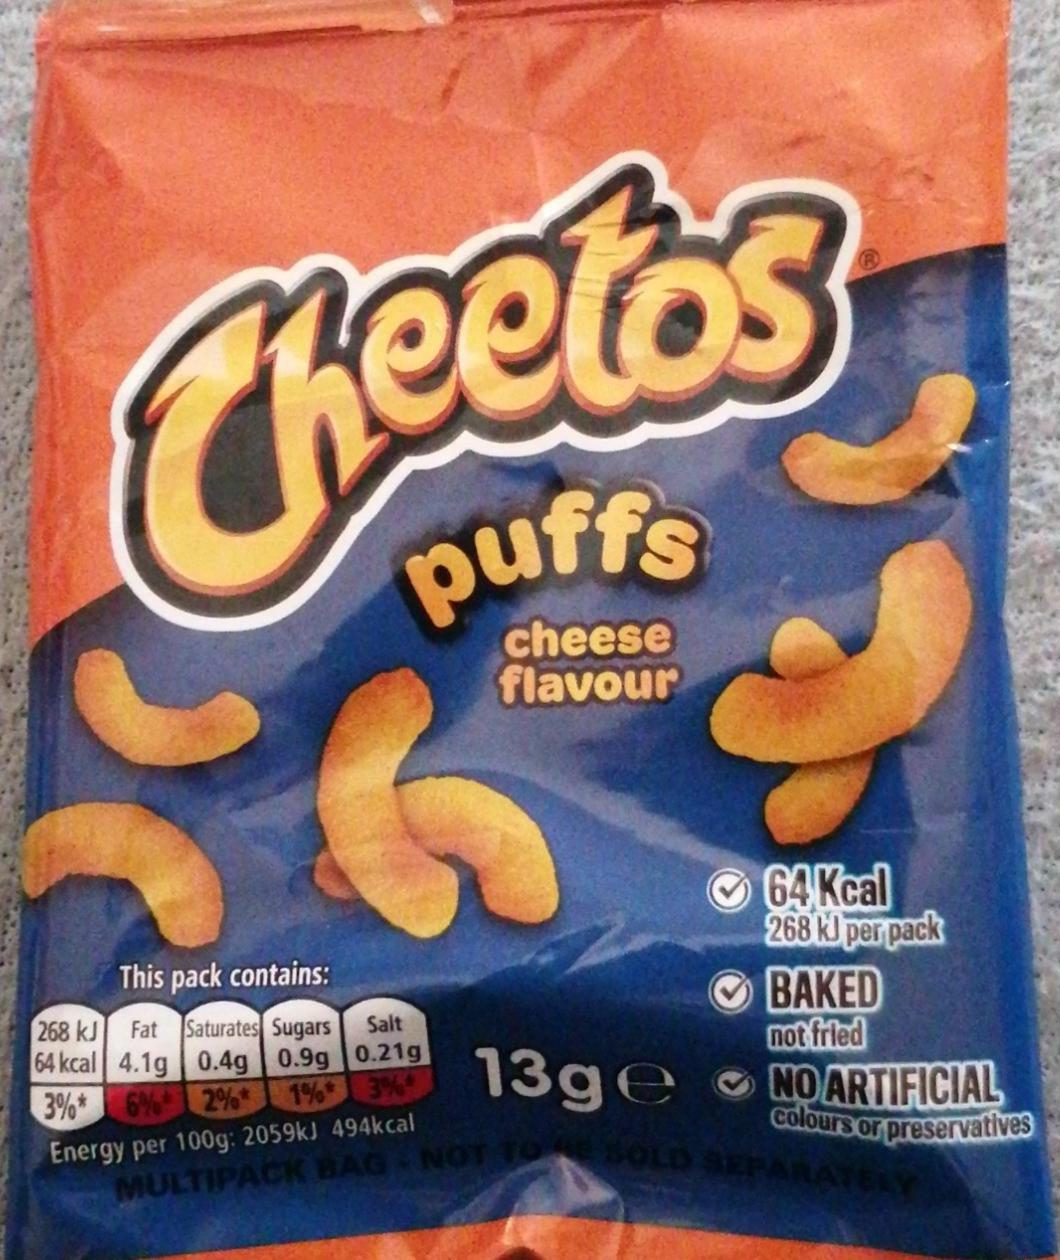 Zdjęcia - Cheetos puffs cheese flavour